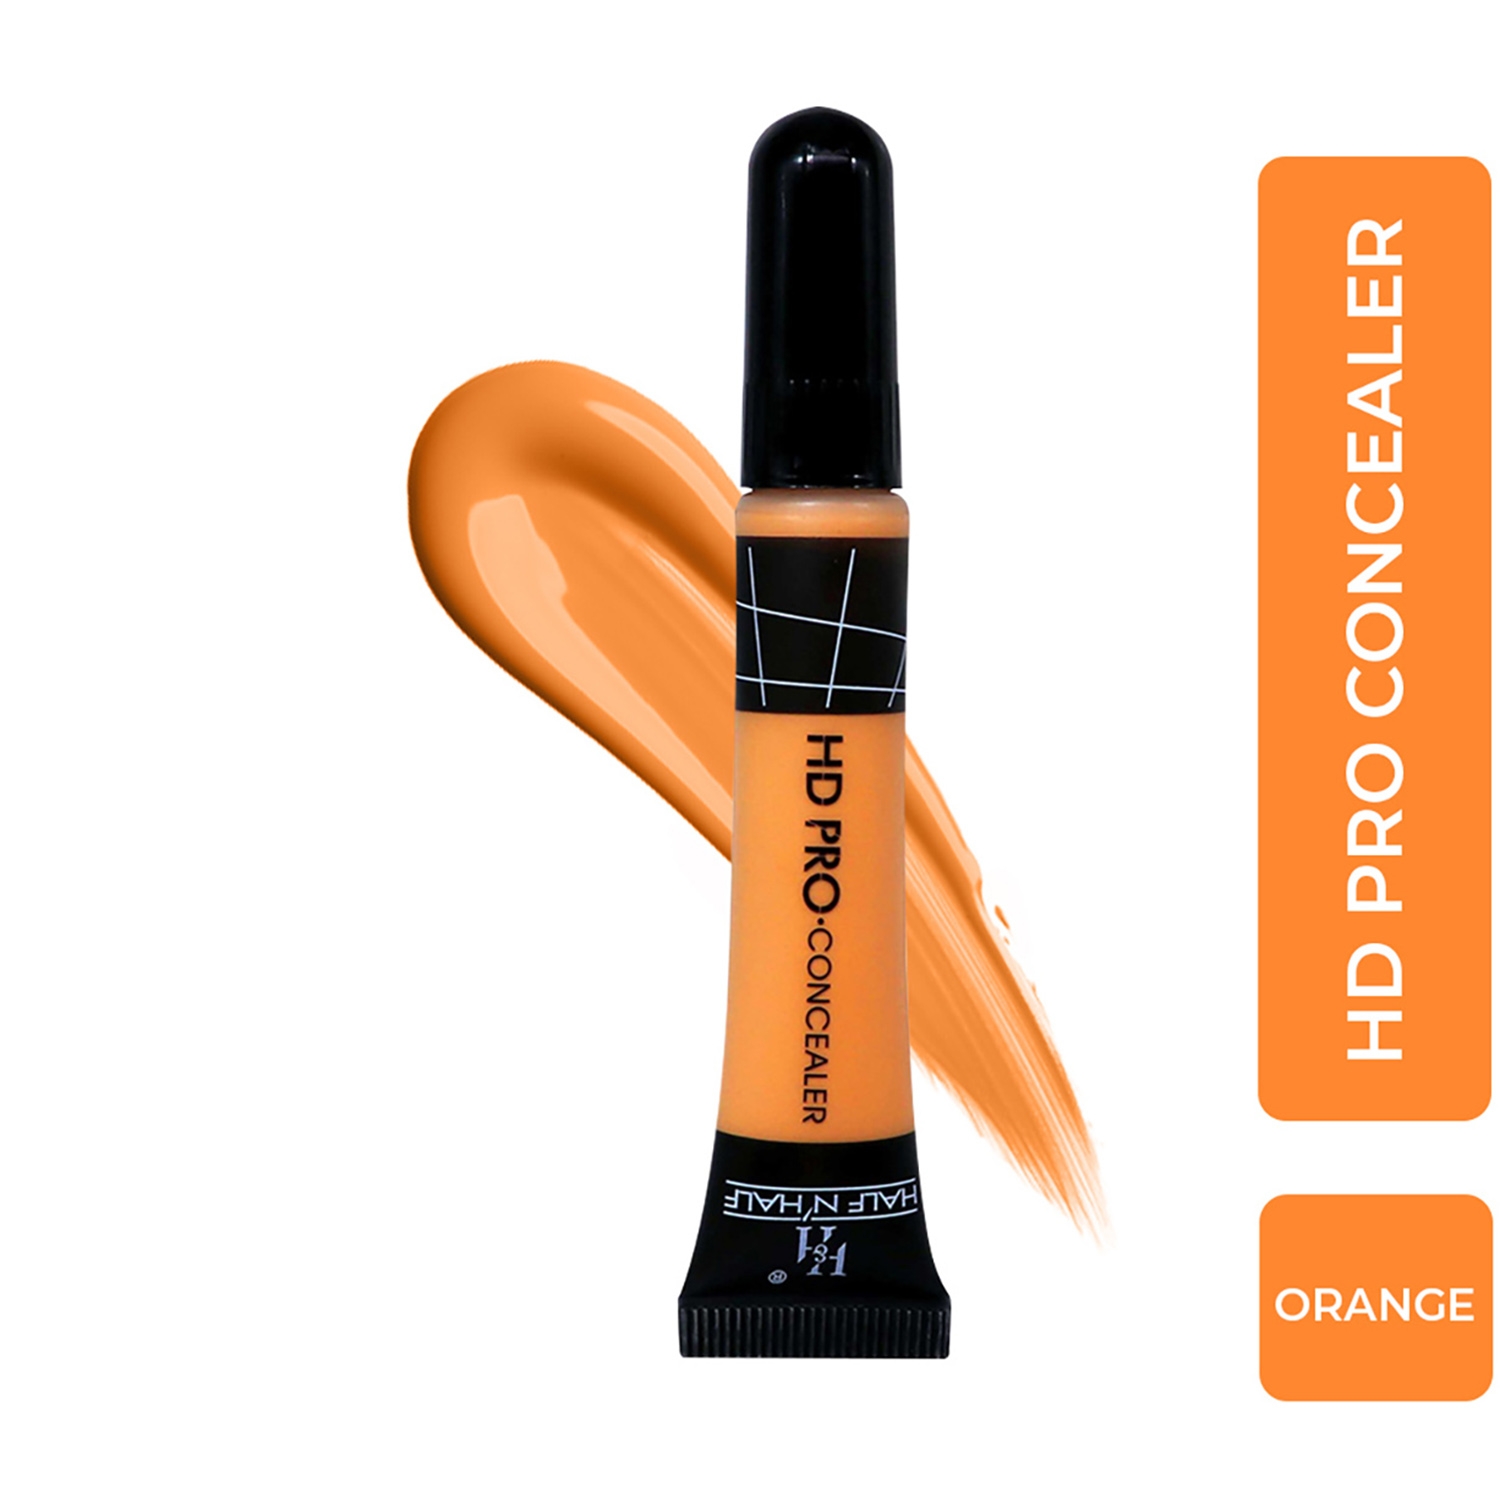 Half N Half HD Pro Face Makeup Concealer - 06 Orange (8g)